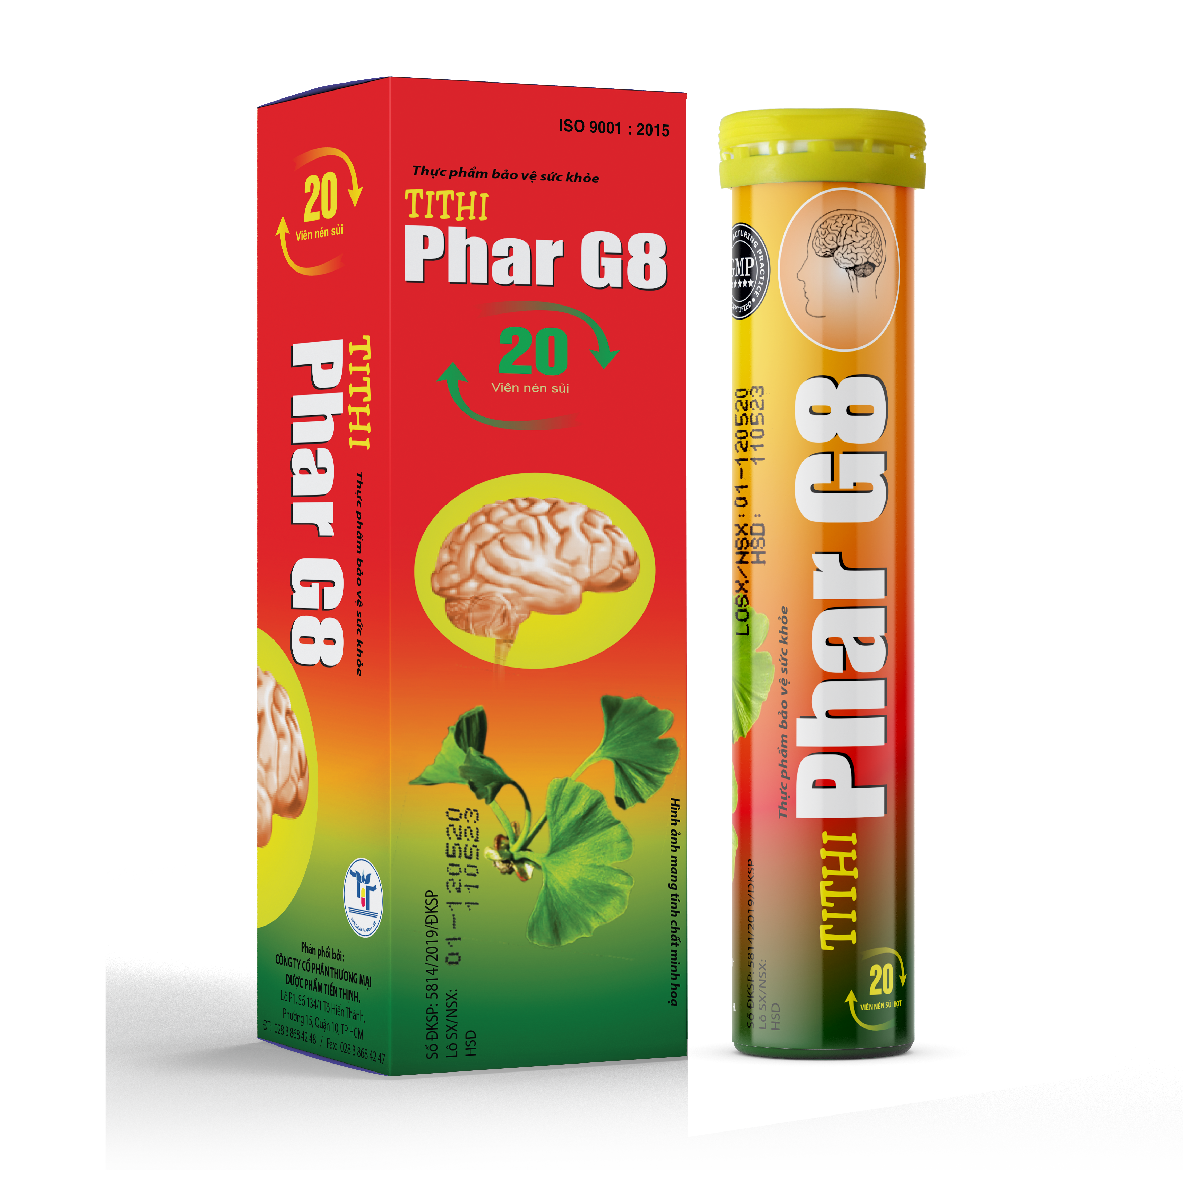 TiThi Phar G8